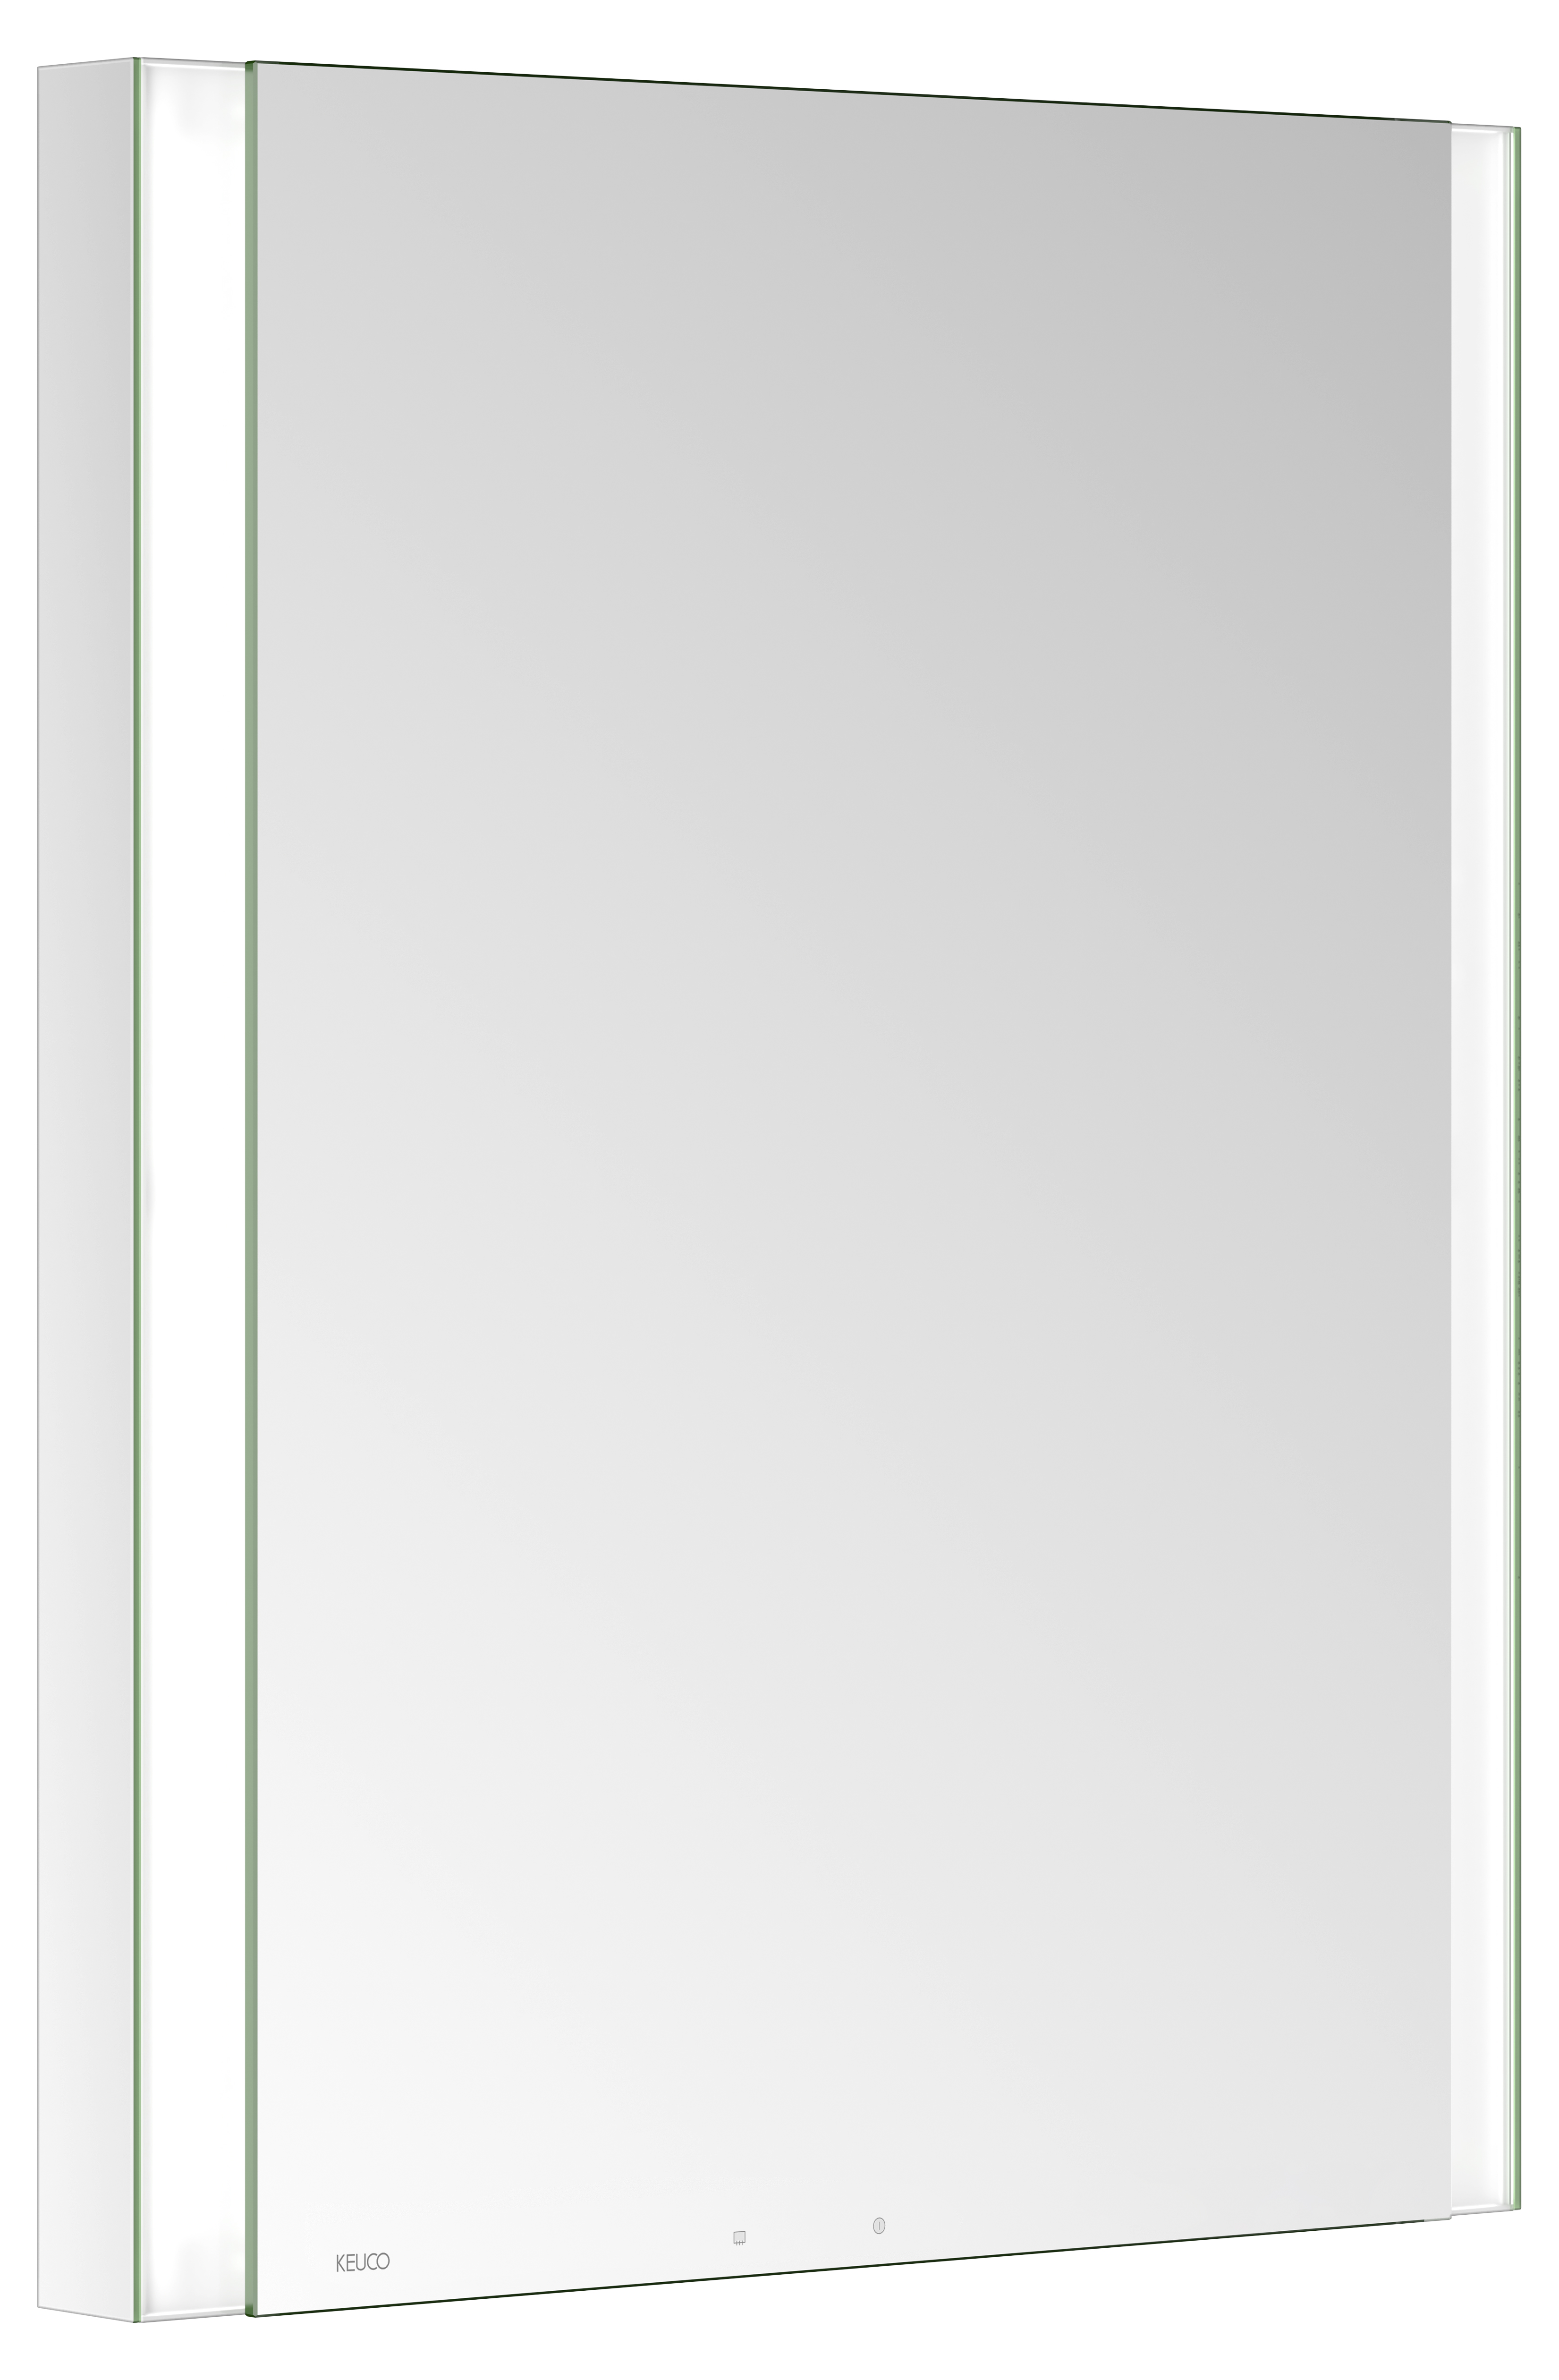 Левый зеркальный шкаф с подсветкой и подогревом для встраиваемого монтажа KEUCO Somaris 14511 001201 115 мм х 600 мм х 710 мм, с 1 поворотной дверцей, цвет корпуса Зеркальный